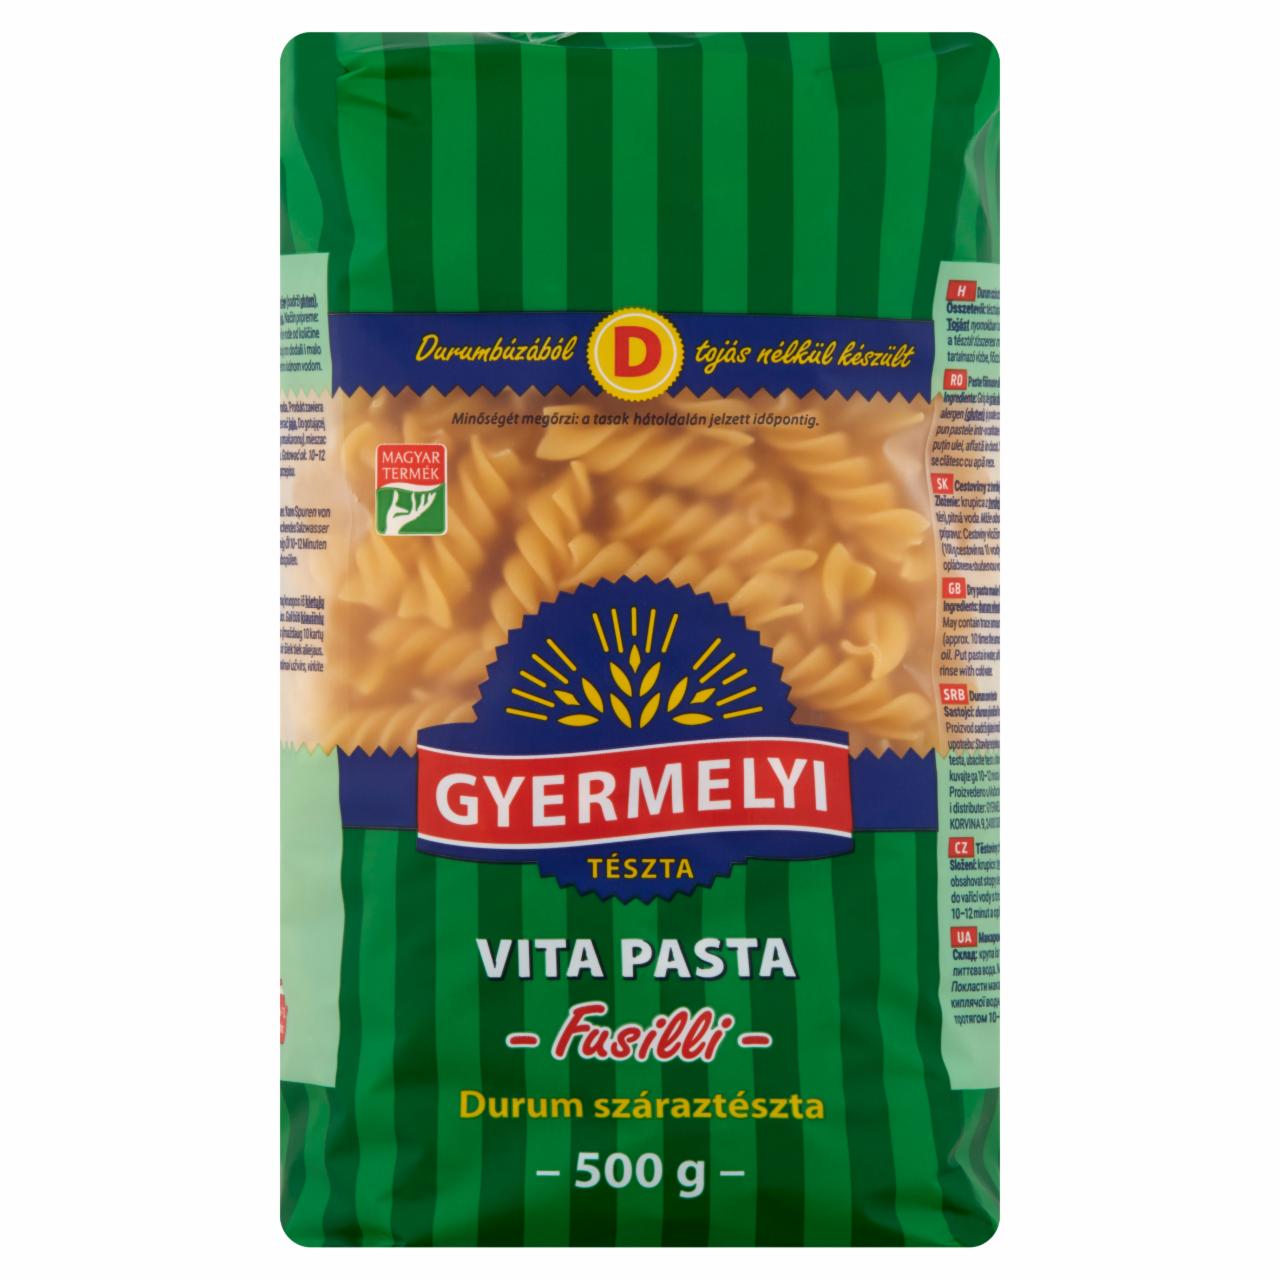 Képek - Gyermelyi Vita Pasta Fusilli durum száraztészta 500 g